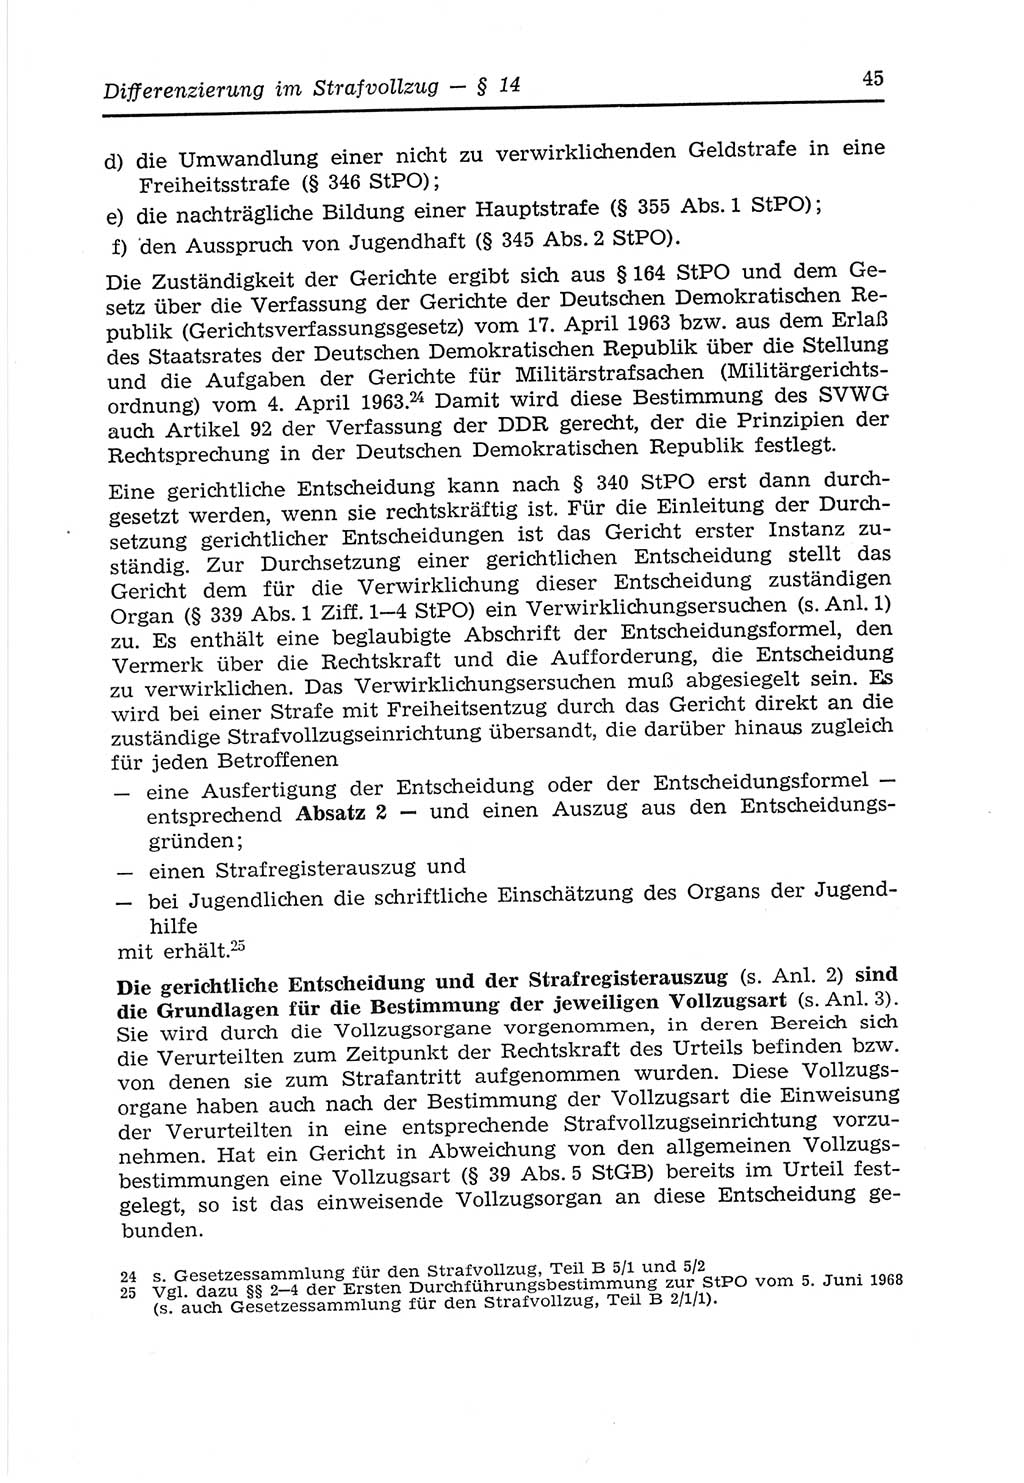 Strafvollzugs- und Wiedereingliederungsgesetz (SVWG) der Deutschen Demokratischen Republik (DDR) 1968, Seite 45 (SVWG DDR 1968, S. 45)